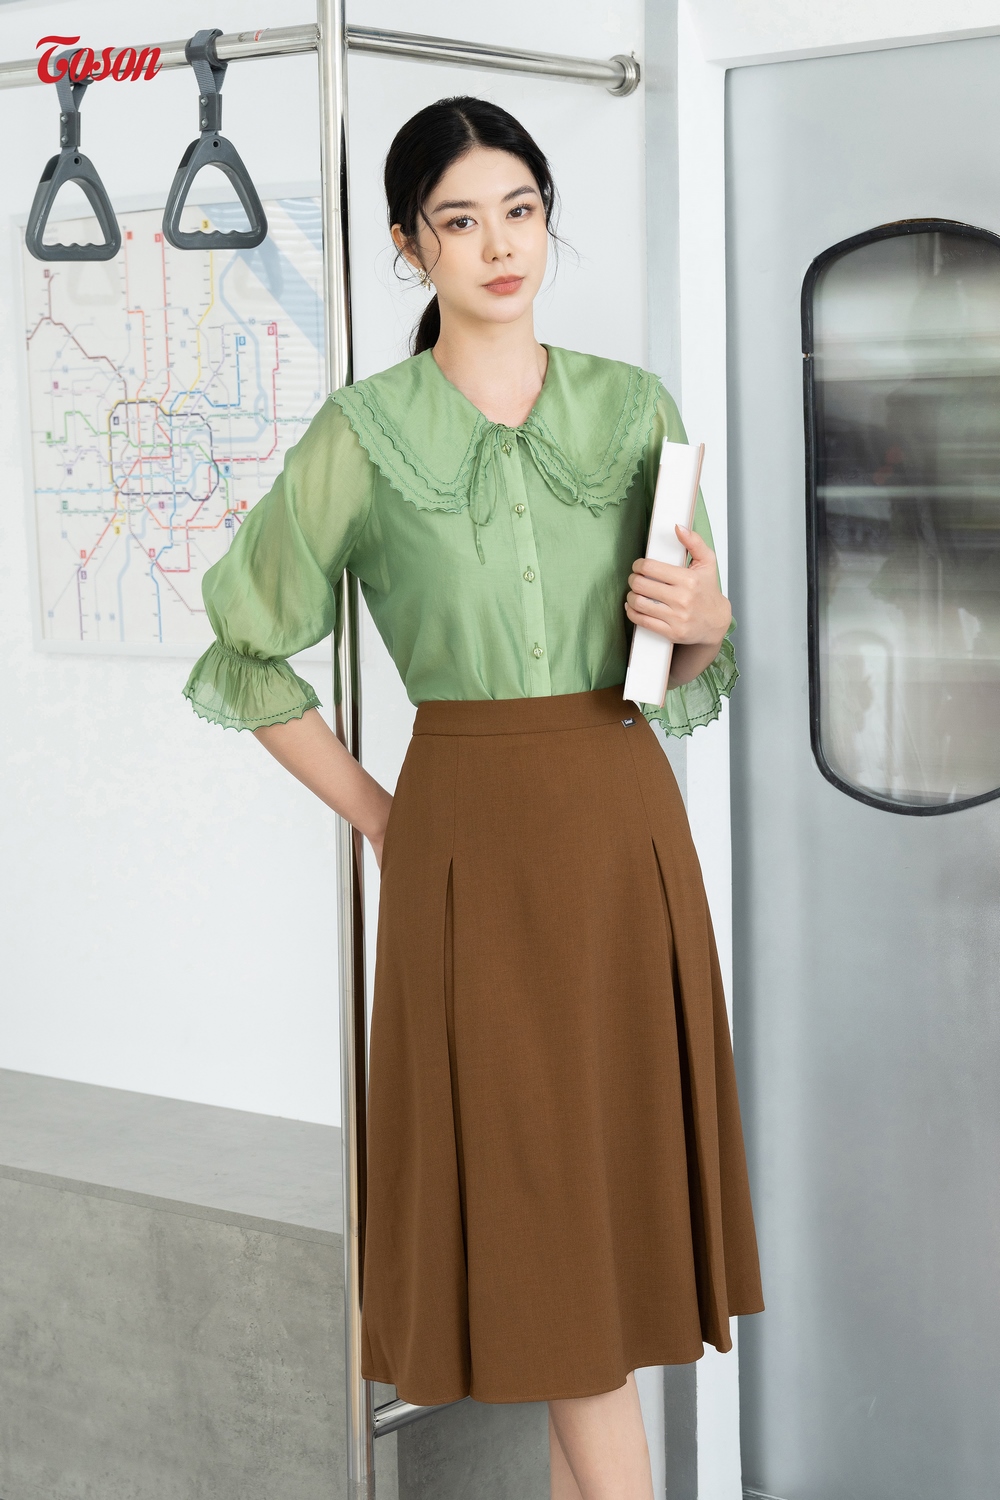 DL229 : Đầm len dệt kim HQ xòe, chân váy xếp ly phối sọc kẻ - yishop.com.vn